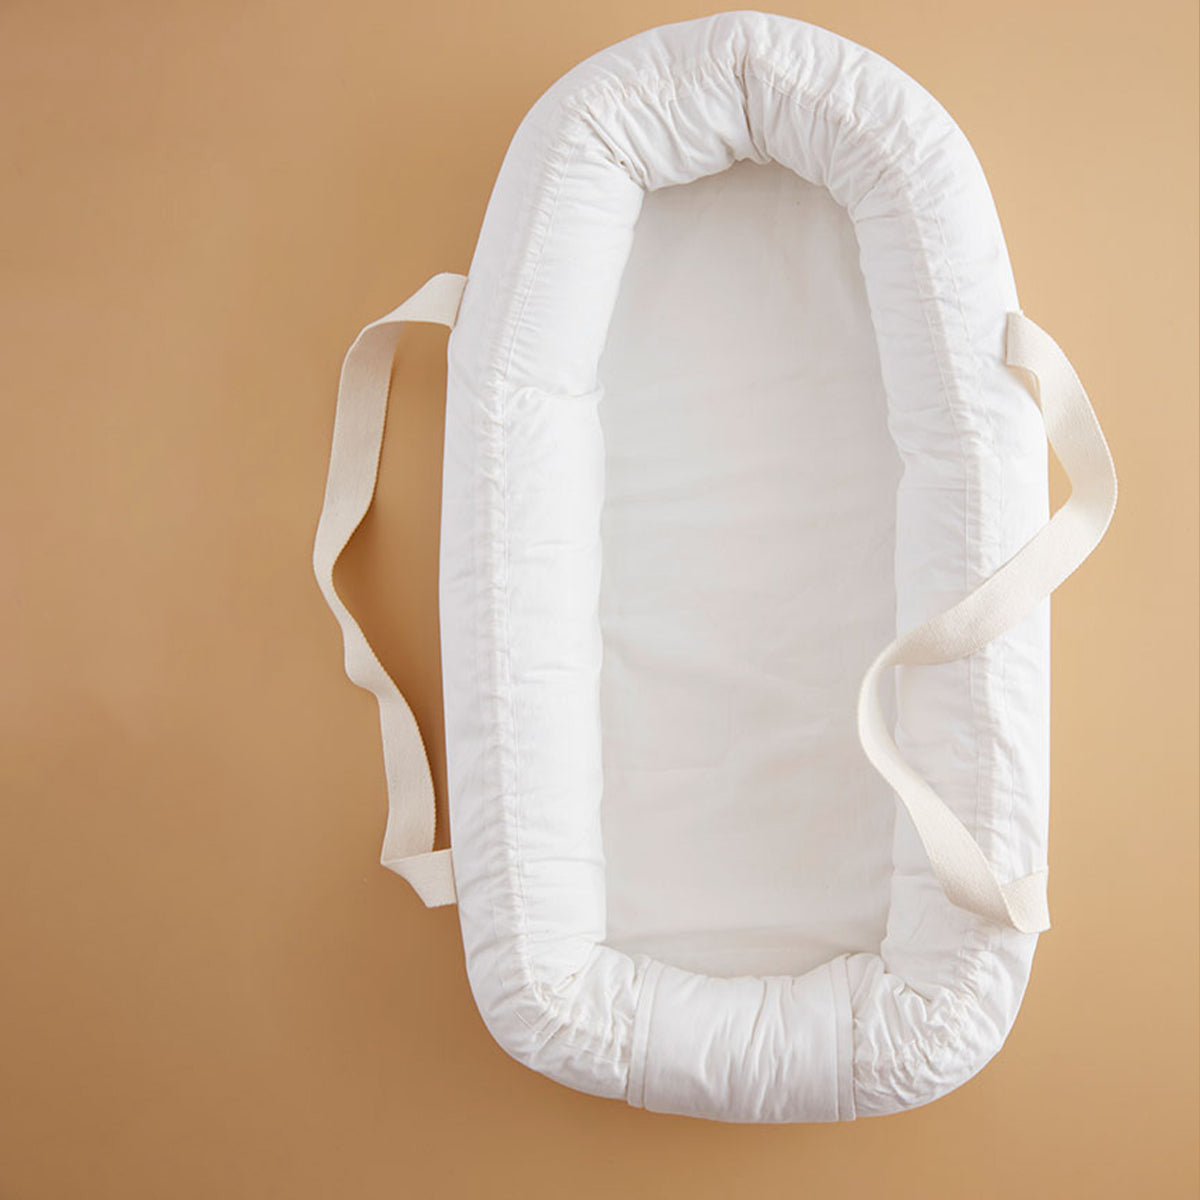 Het Kid’s Concept babynestje wit is een fijn plekje voor jouw kleine baby om tot rust te komen. Dit heerlijke zachte babynestje heeft hoge randen, zodat jouw kleintje veilig en lekker comfortabel kan liggen. VanZus.